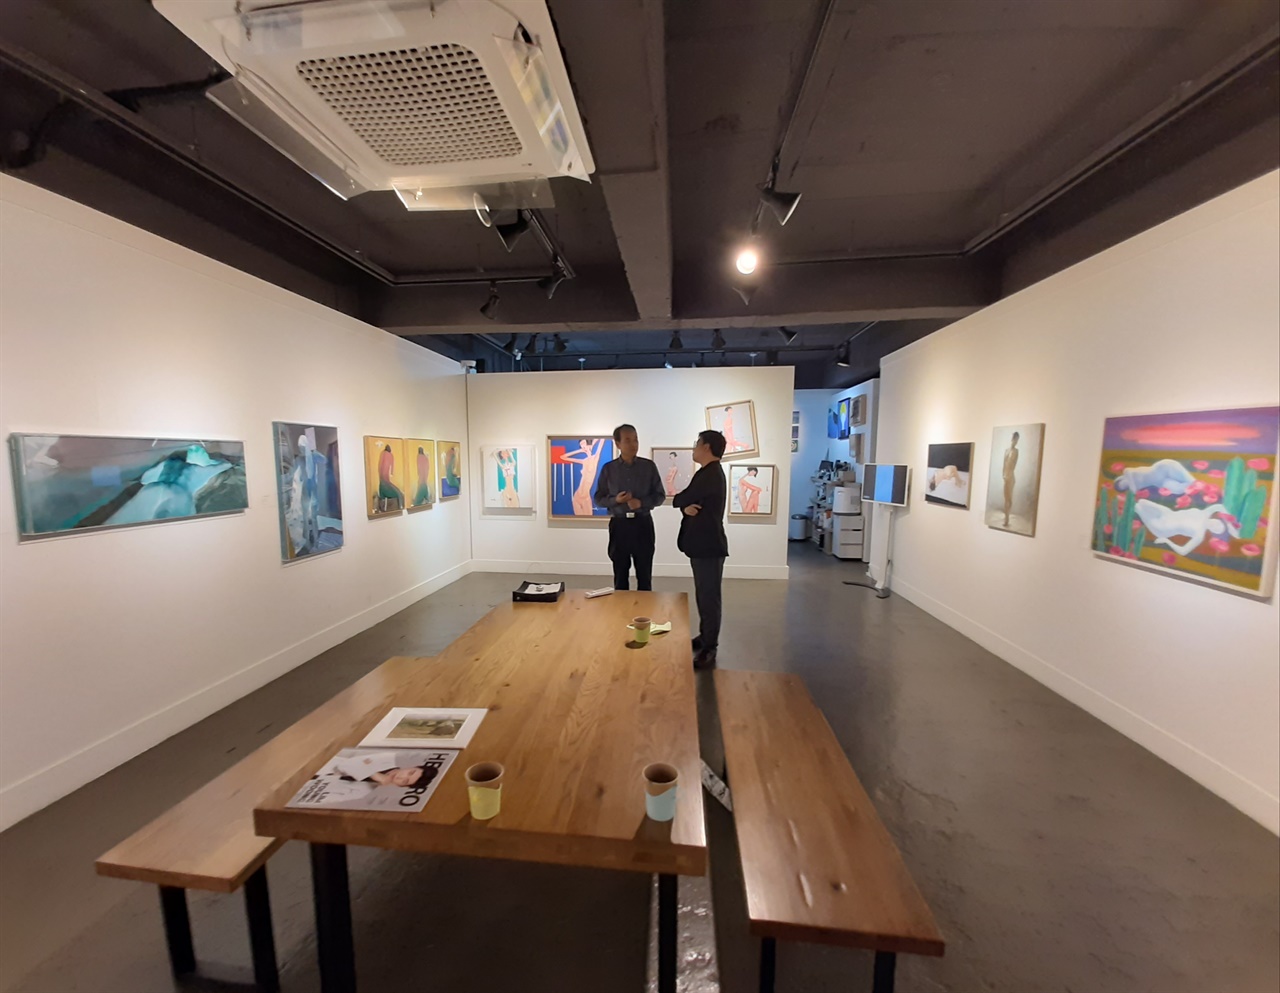 서울 서초동에 있는 ‘한국화가협동조합 갤러리 쿱’에서는 지금 ‘누드특별展’이 열리고 있다. 
